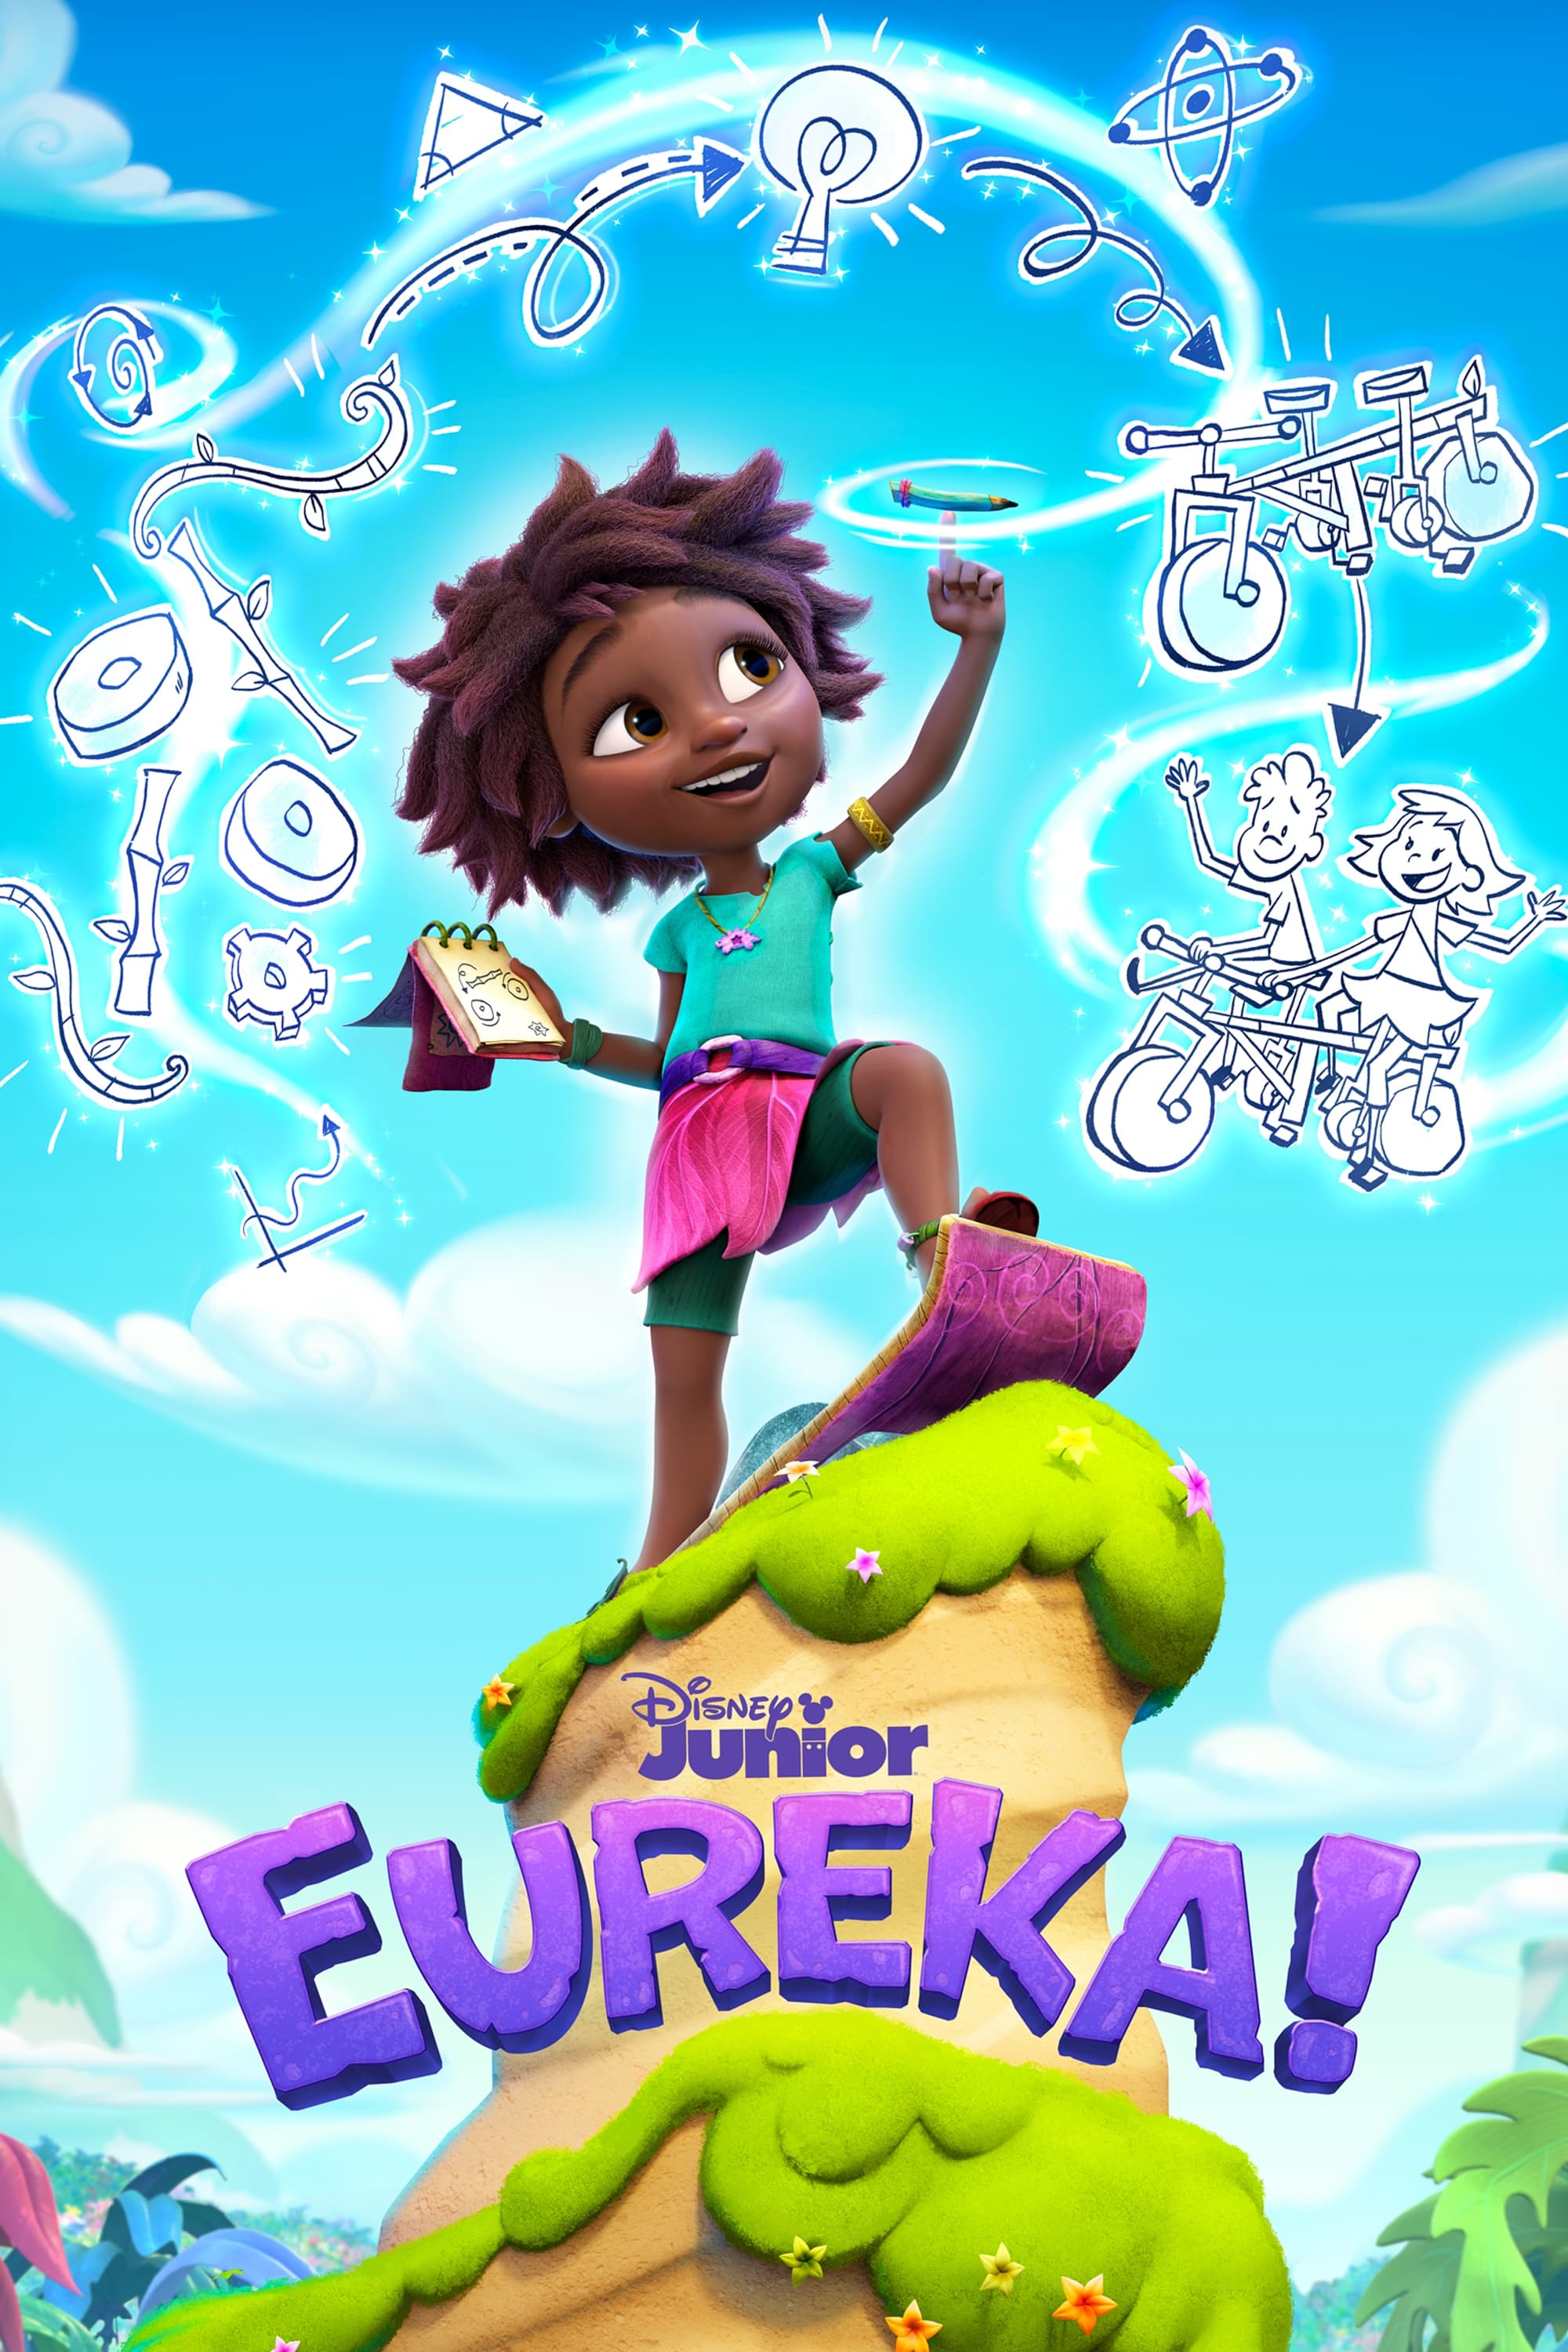 TV ratings for Eureka! in France. Disney Junior TV series